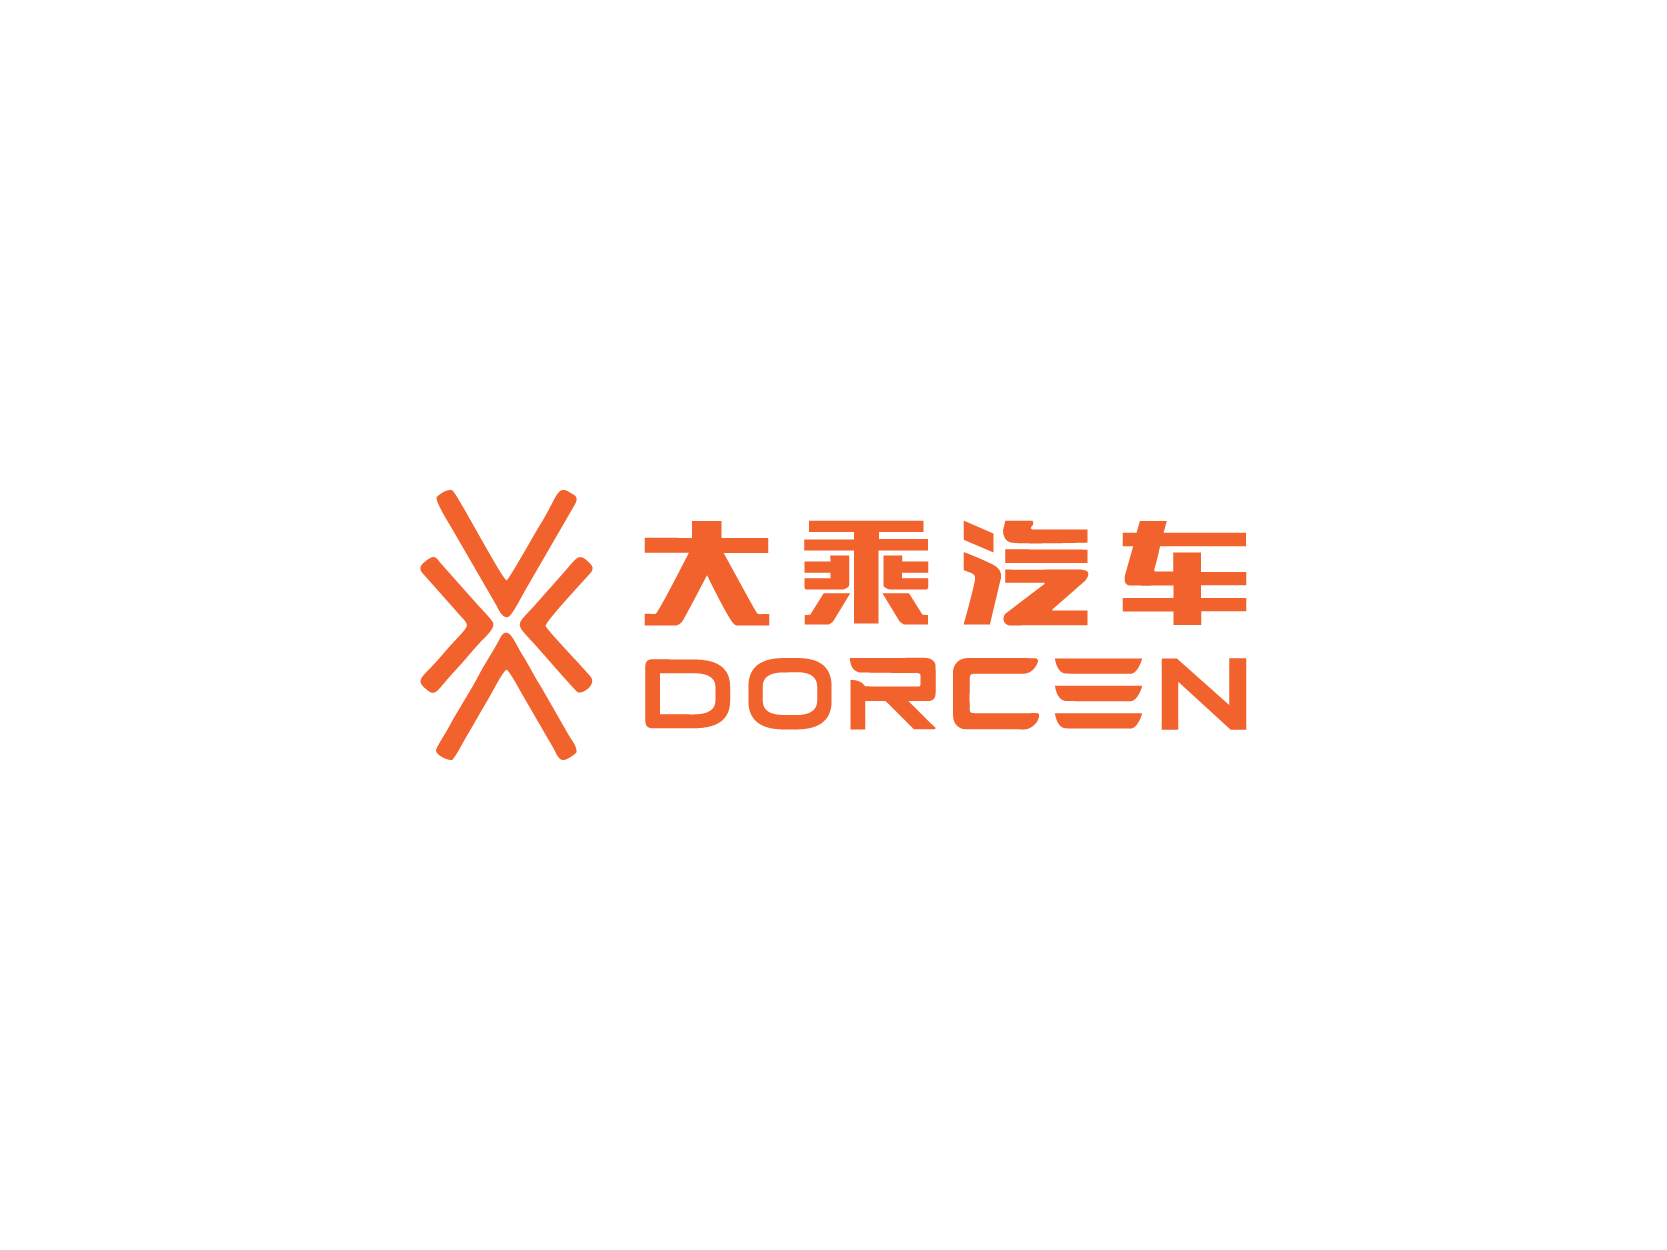 大乘汽车Dorcen标志logo设计